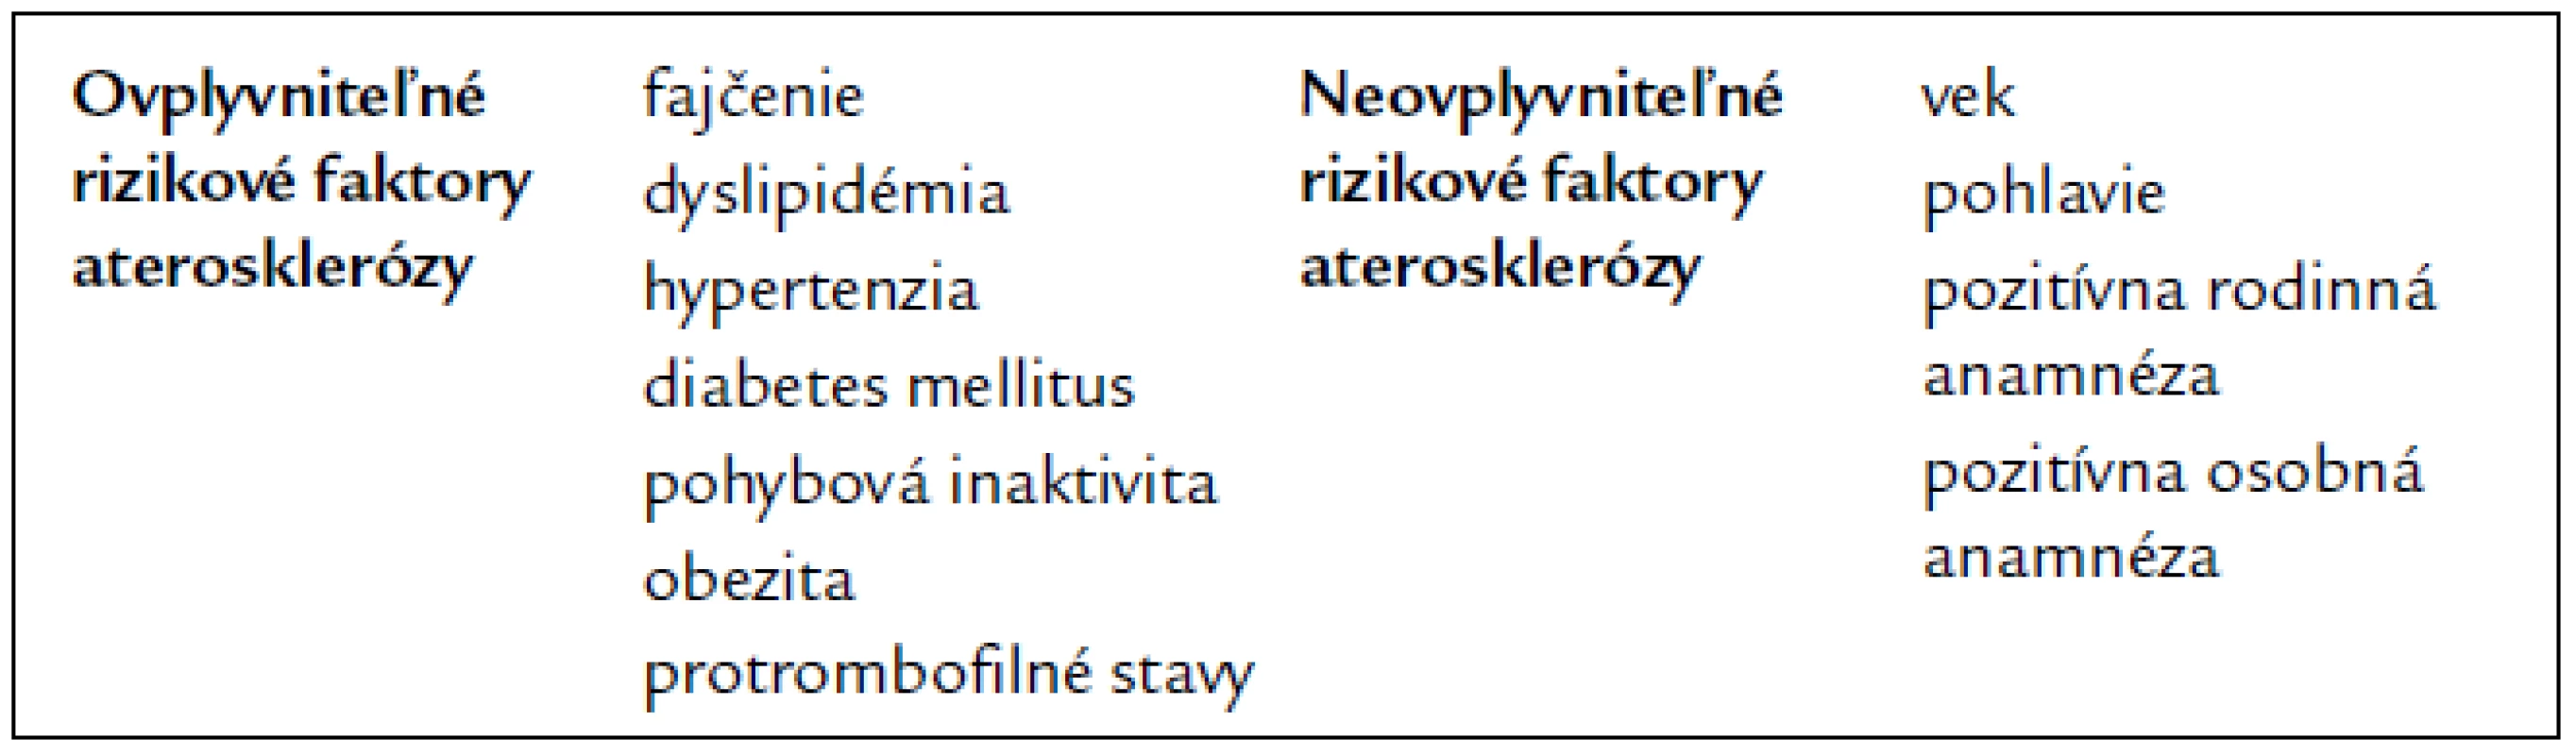 Niektoré ovplyvniteľné a neovplyvniteľné rizikové faktory aterosklerózy. Podľa [24].